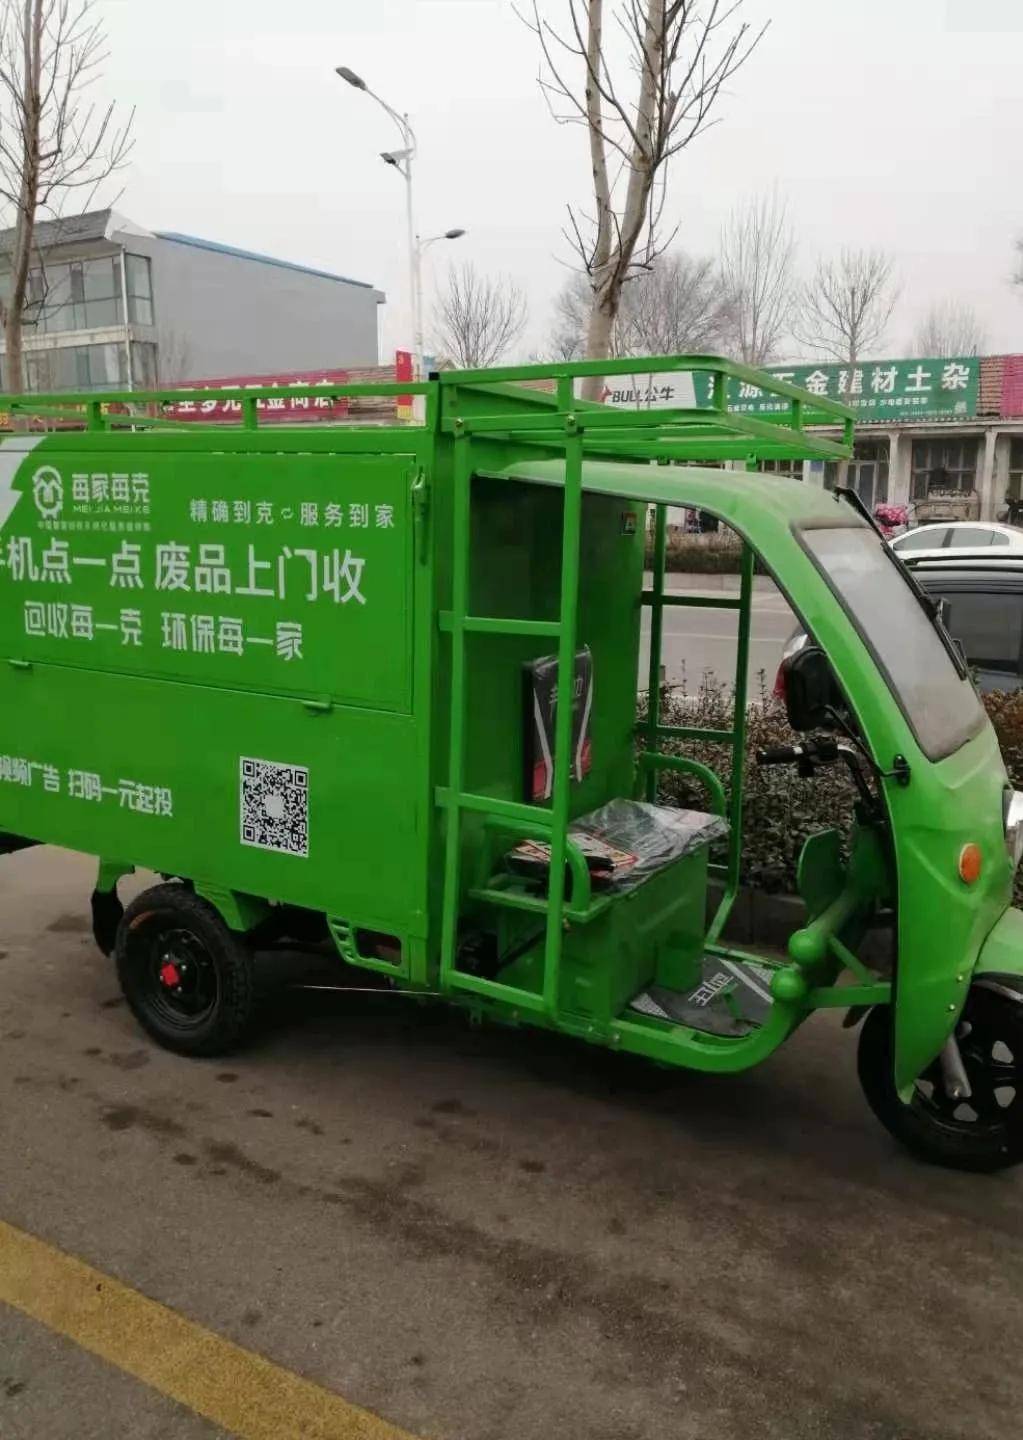 每家每克 | 好消息 国家放宽废品回收车进出城区限制!